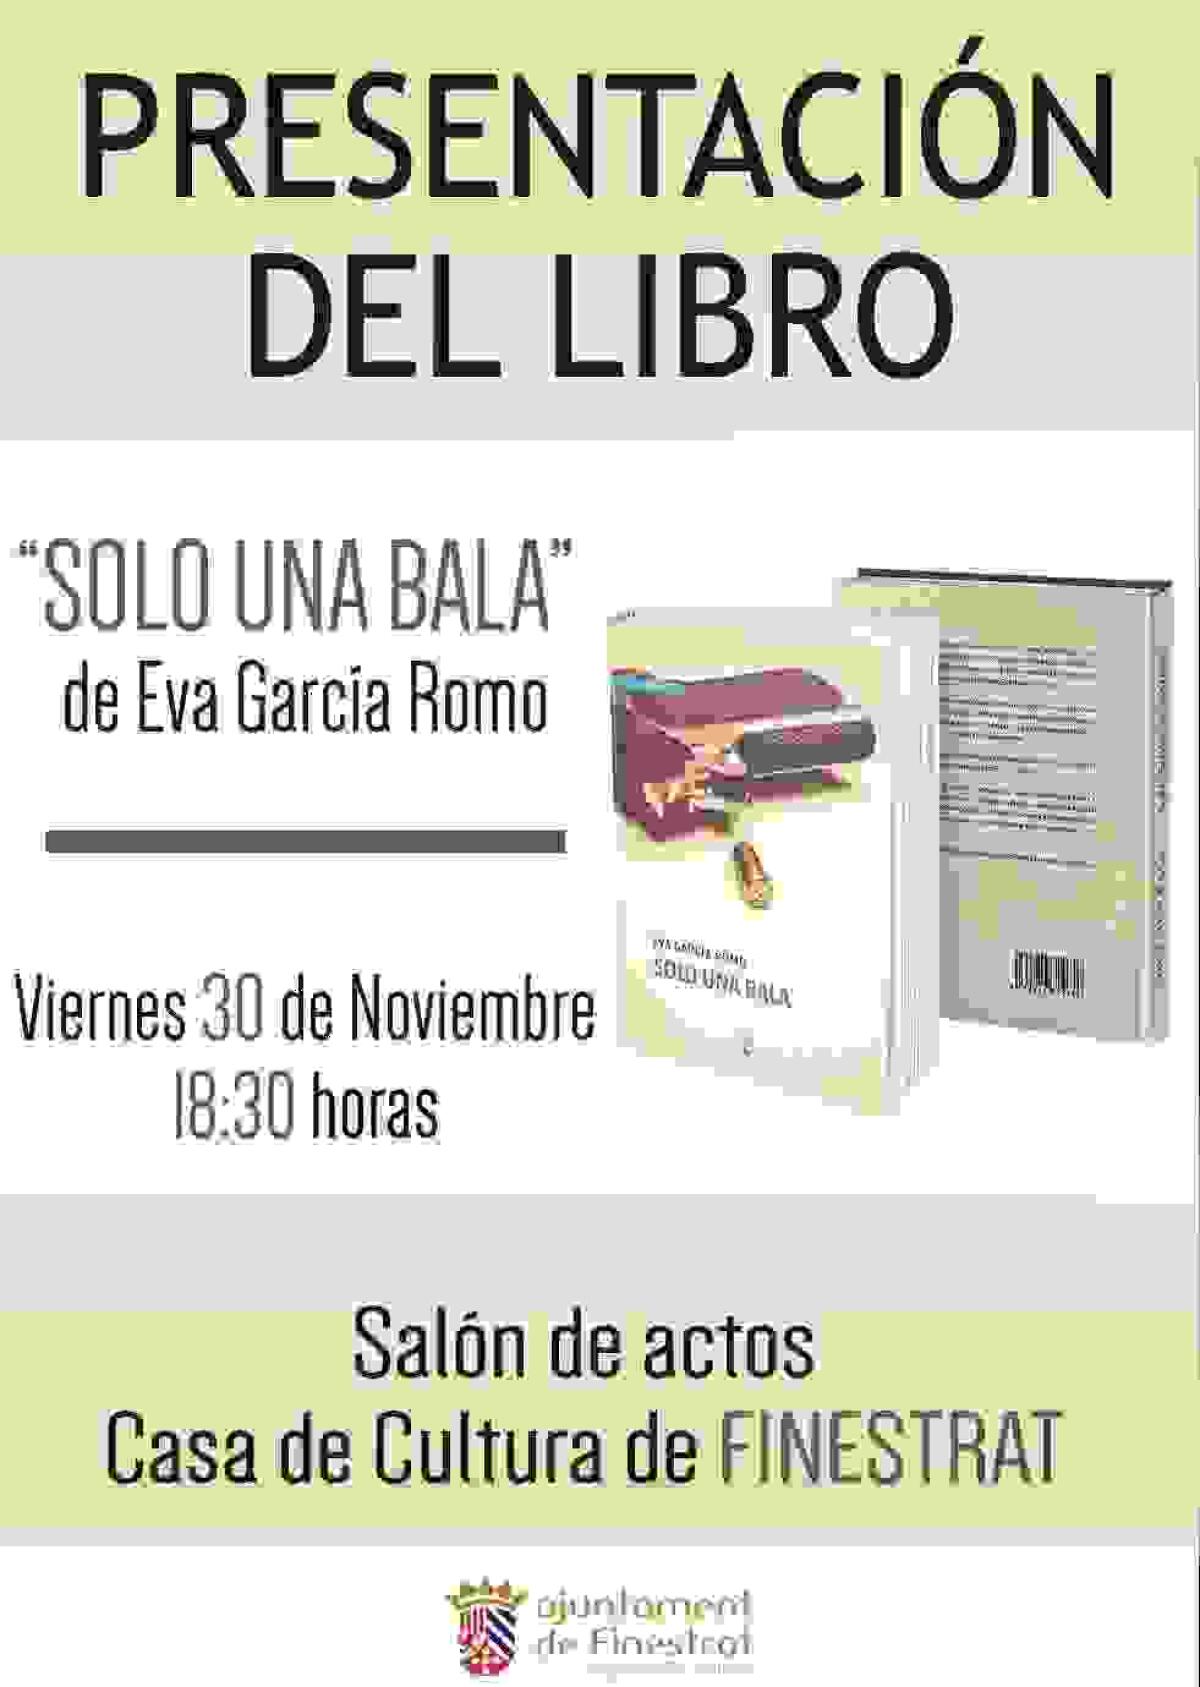 Finestrat acoge este viernes la presentación del libro “Solo una bala” de Eva García Romo